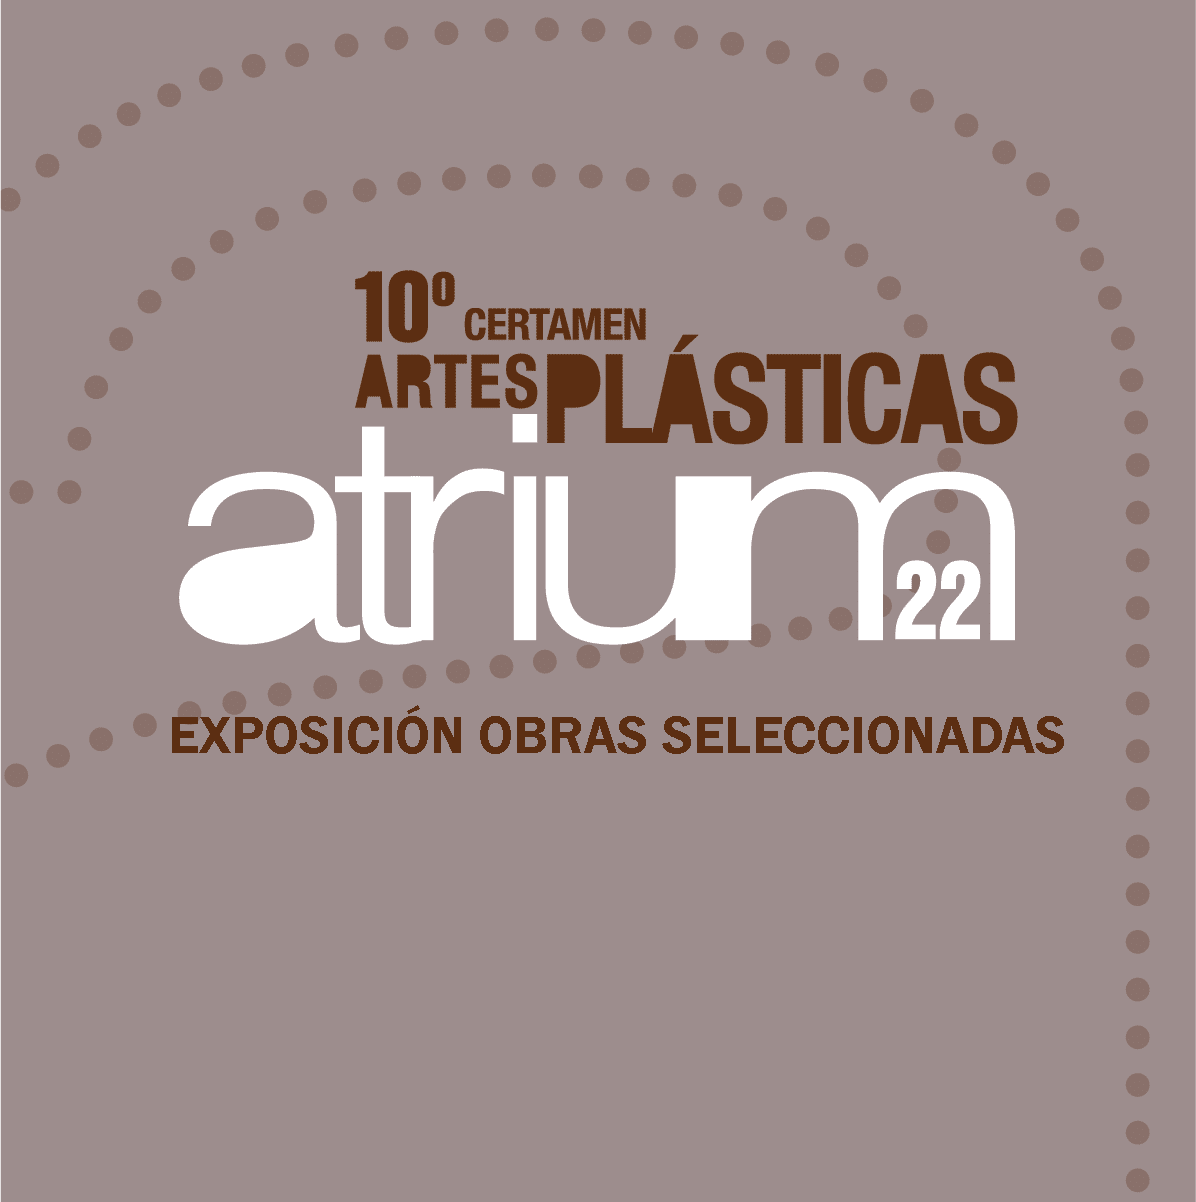 CERTAMEN DE ARTES PLÁSTICAS ATRIUM 22 EXPOSICIÓN OBRAS SELECCIONADAS